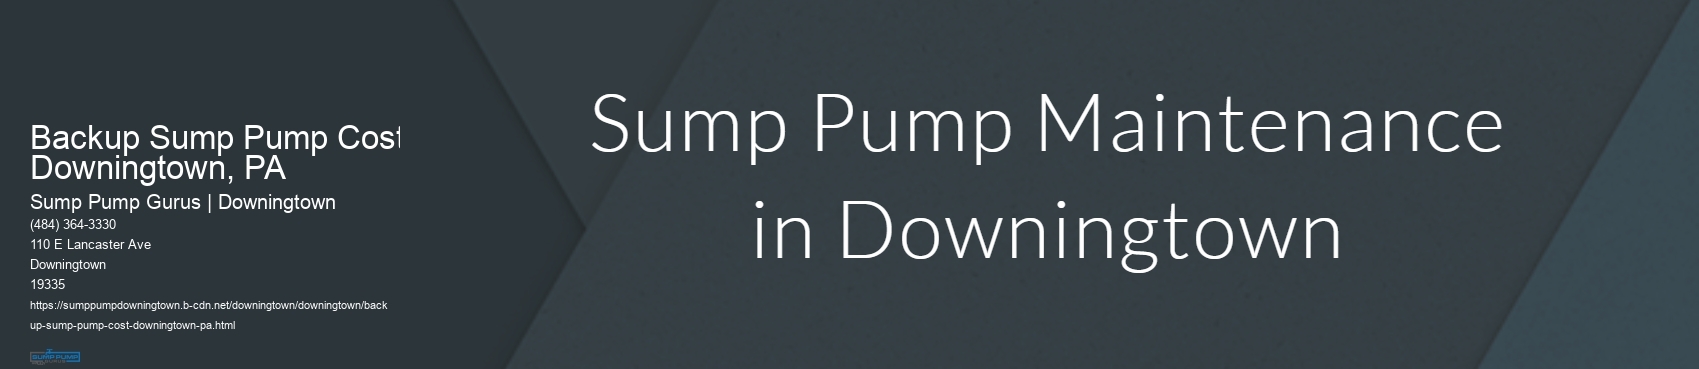 Backup Sump Pump Cost Downingtown, PA